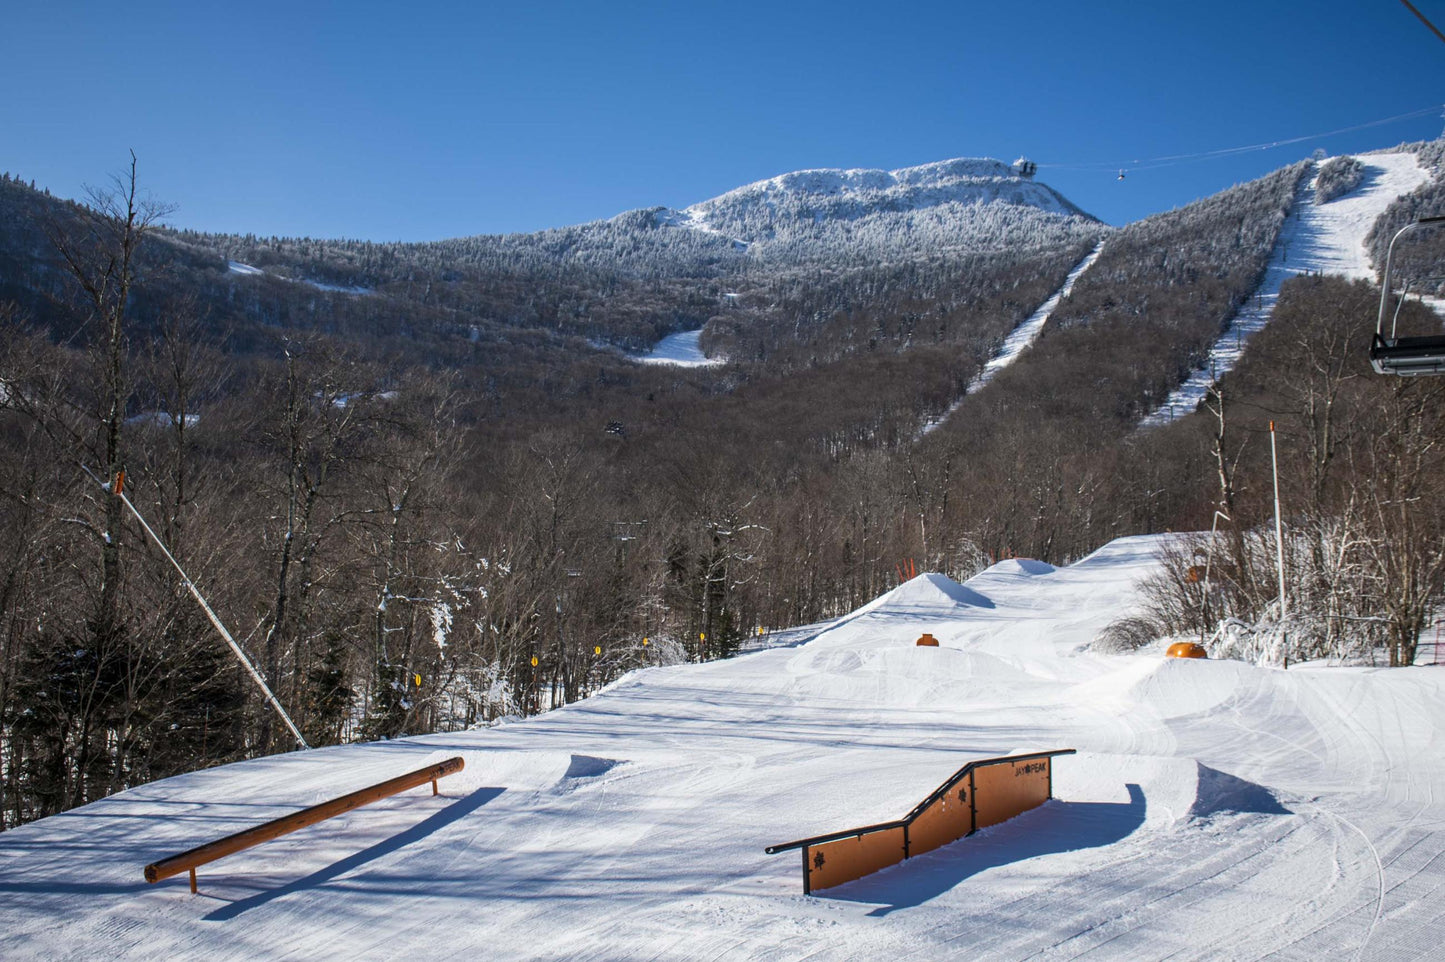 Vermont Ski Resort terrain park for tricks.